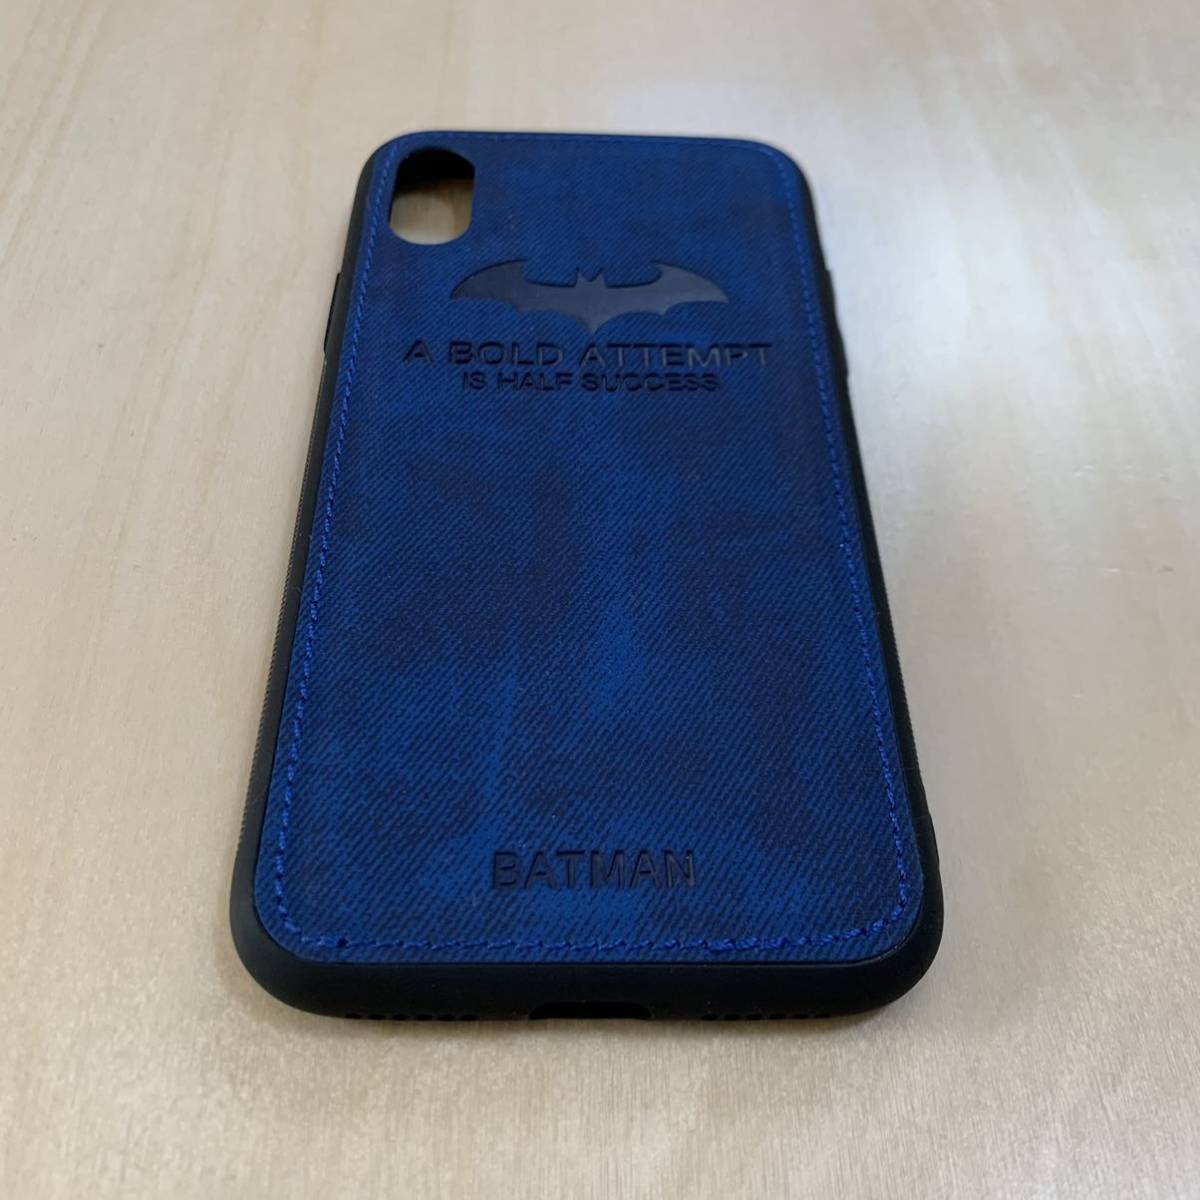 [iPhone X/XS для ] замша Batman кейс покрытие синий / I ho n/ iPhone / iPhone / защита / Junk предотвращение / плёнка / смартфон / камера 